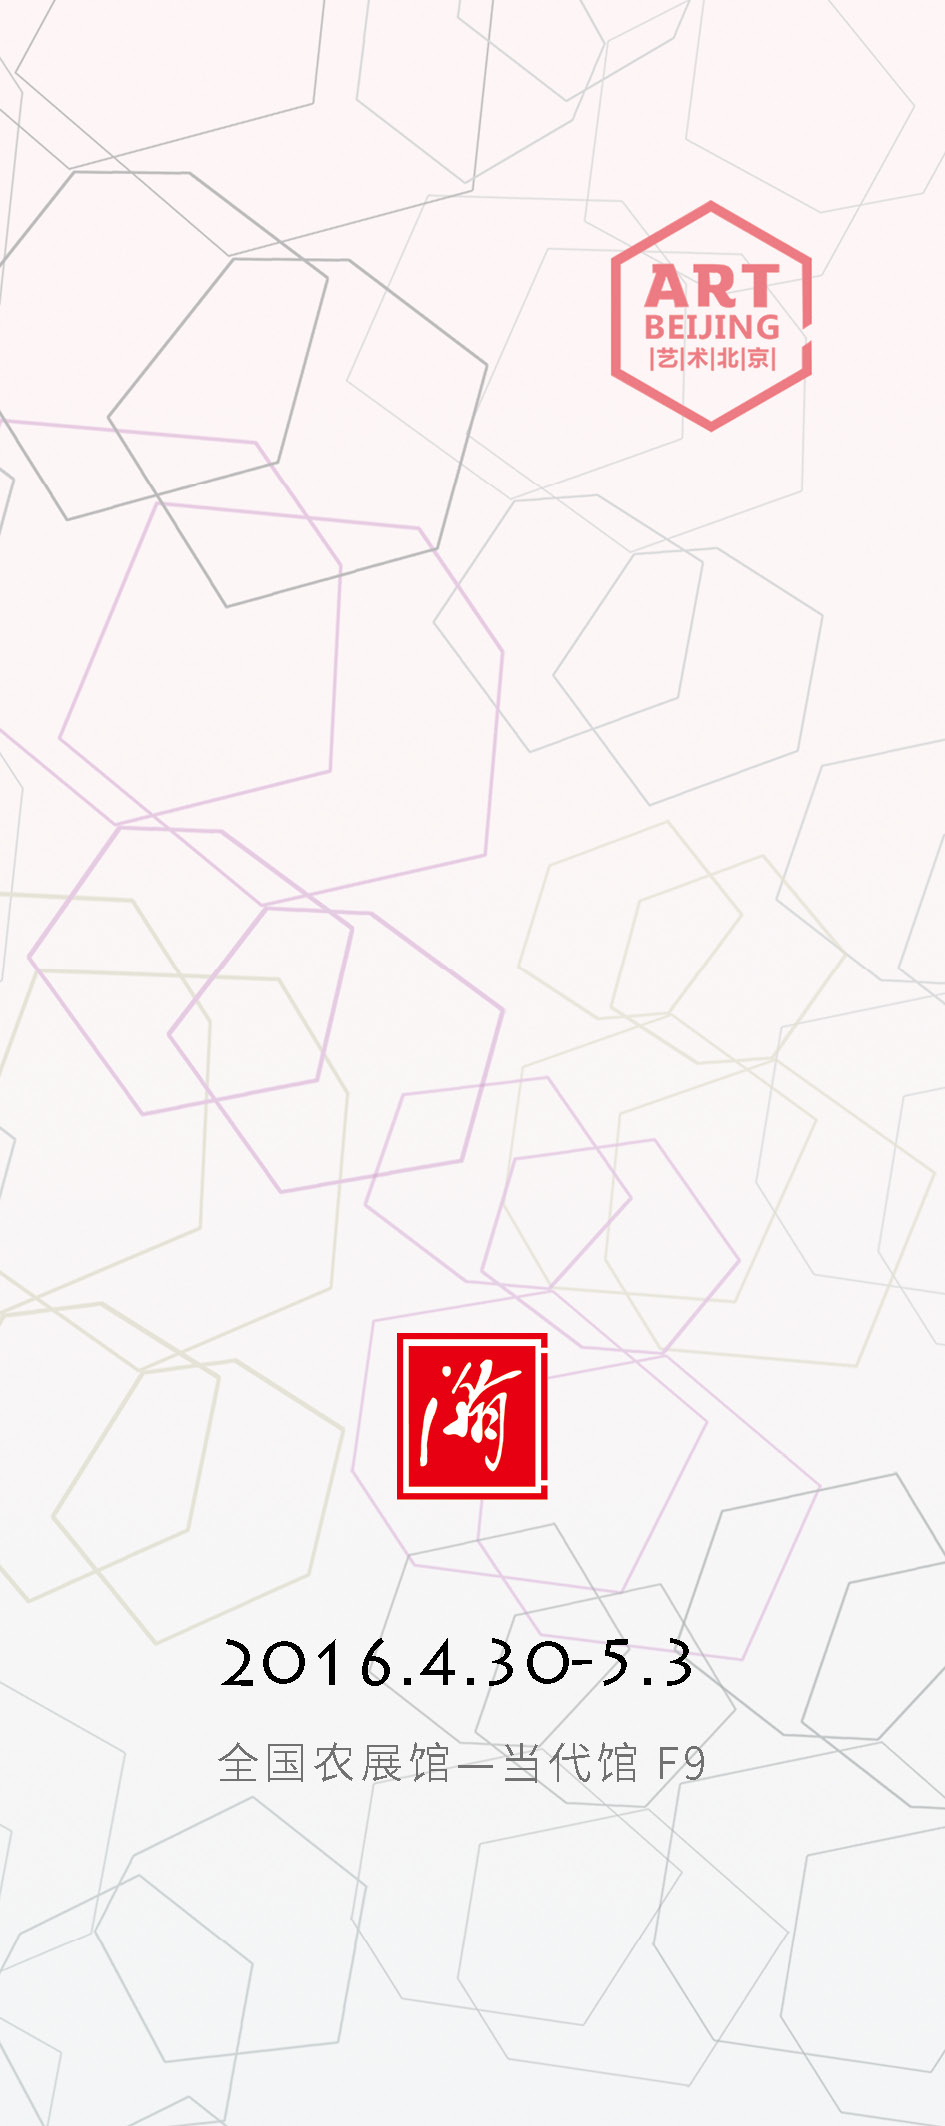 2016年艺术北京-瀚艺术空间作品展